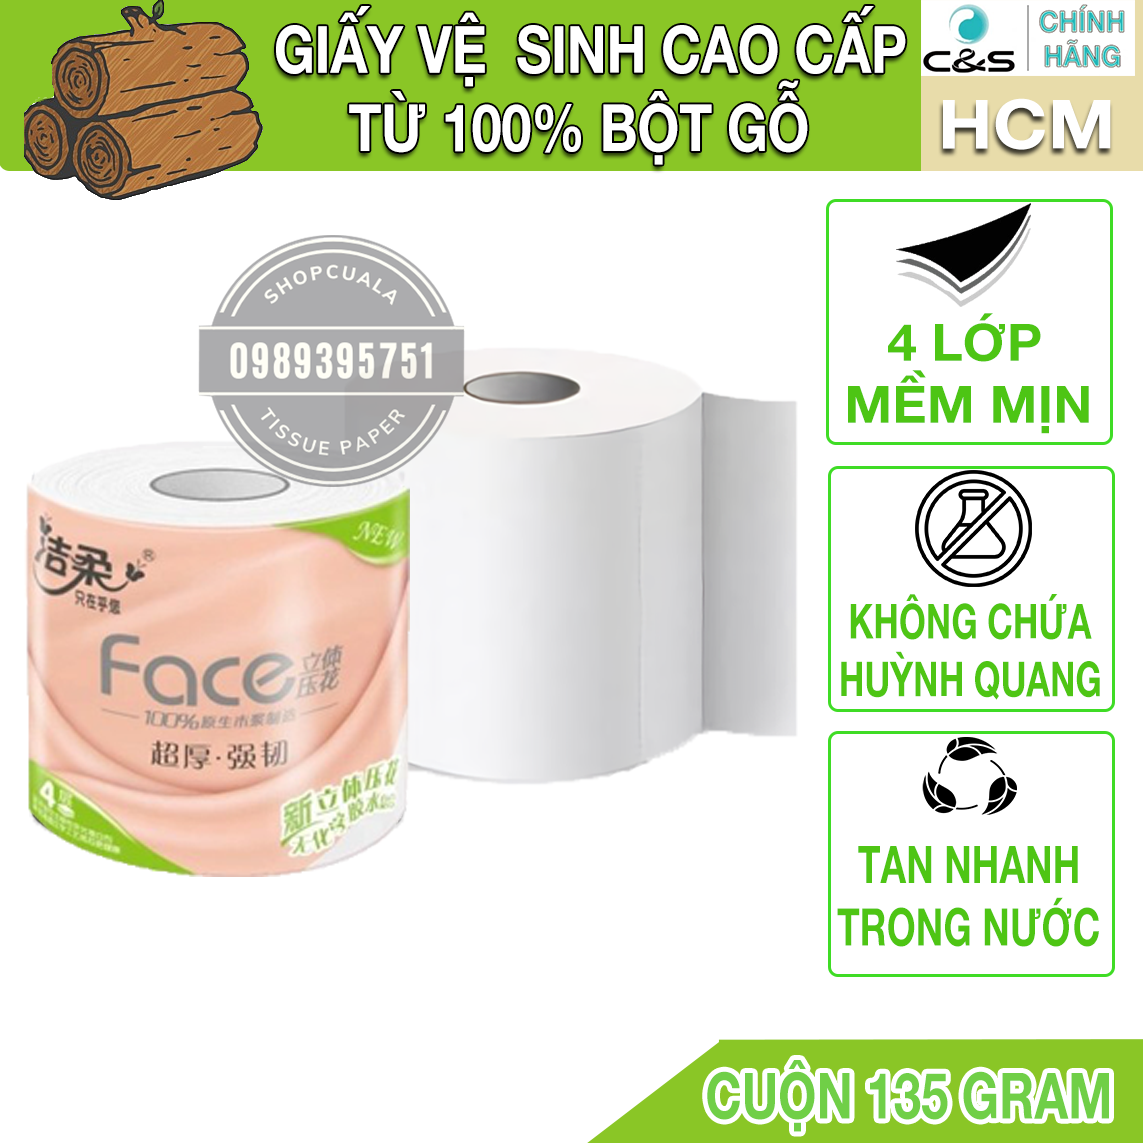 Cuộn giấy vệ sinh cao cấp C&S Face Hồng - giấy 4 lớp mịn màng